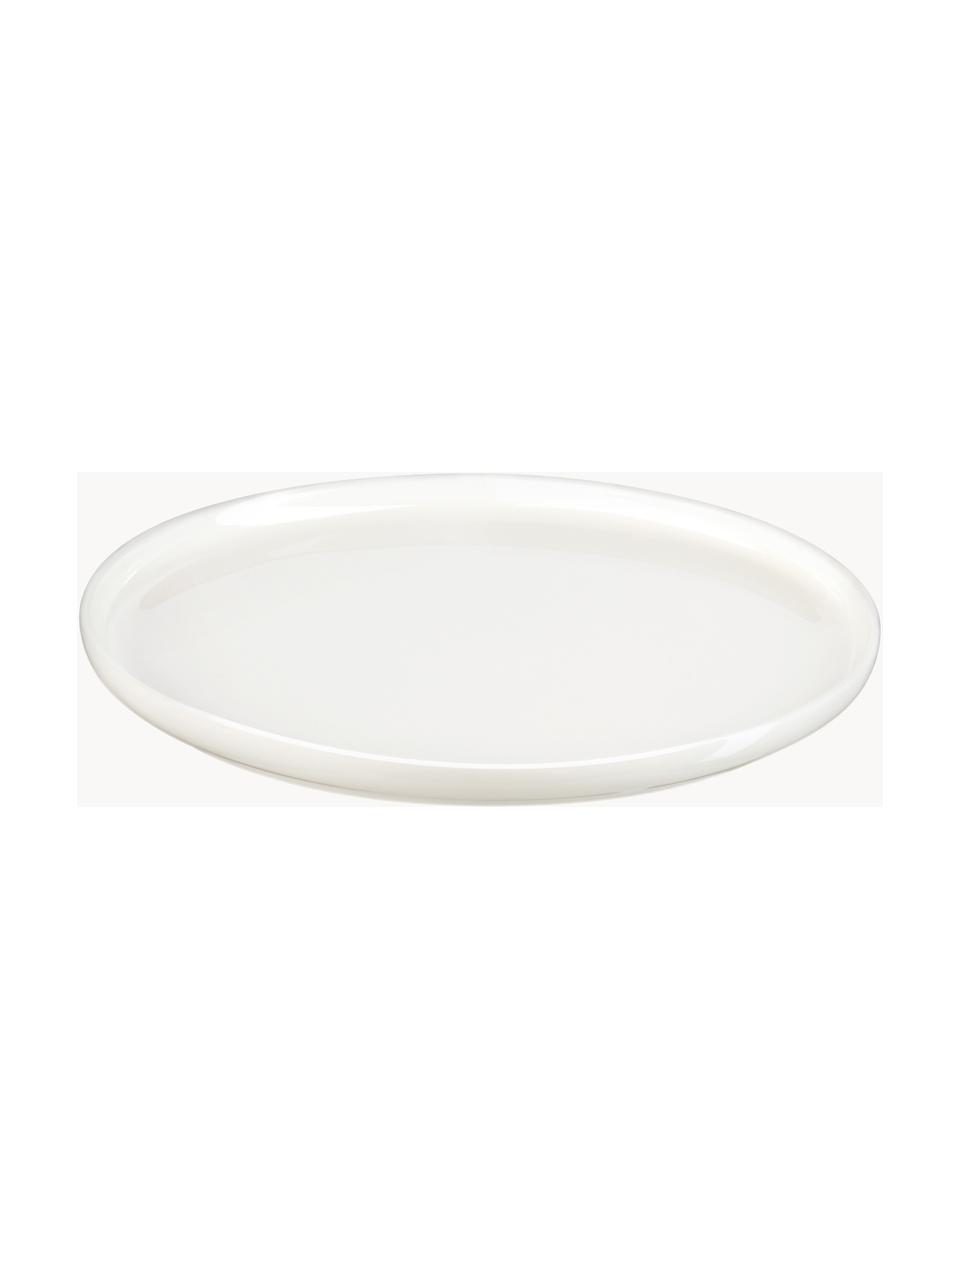 XS tanier z čínskeho porcelánu Oco, 6 ks, Čínsky porcelán
Mäkký porcelán, ktorý sa vyznačuje predovšetkým žiarivým, priehľadným leskom, Lomená biela, Ø 15 cm